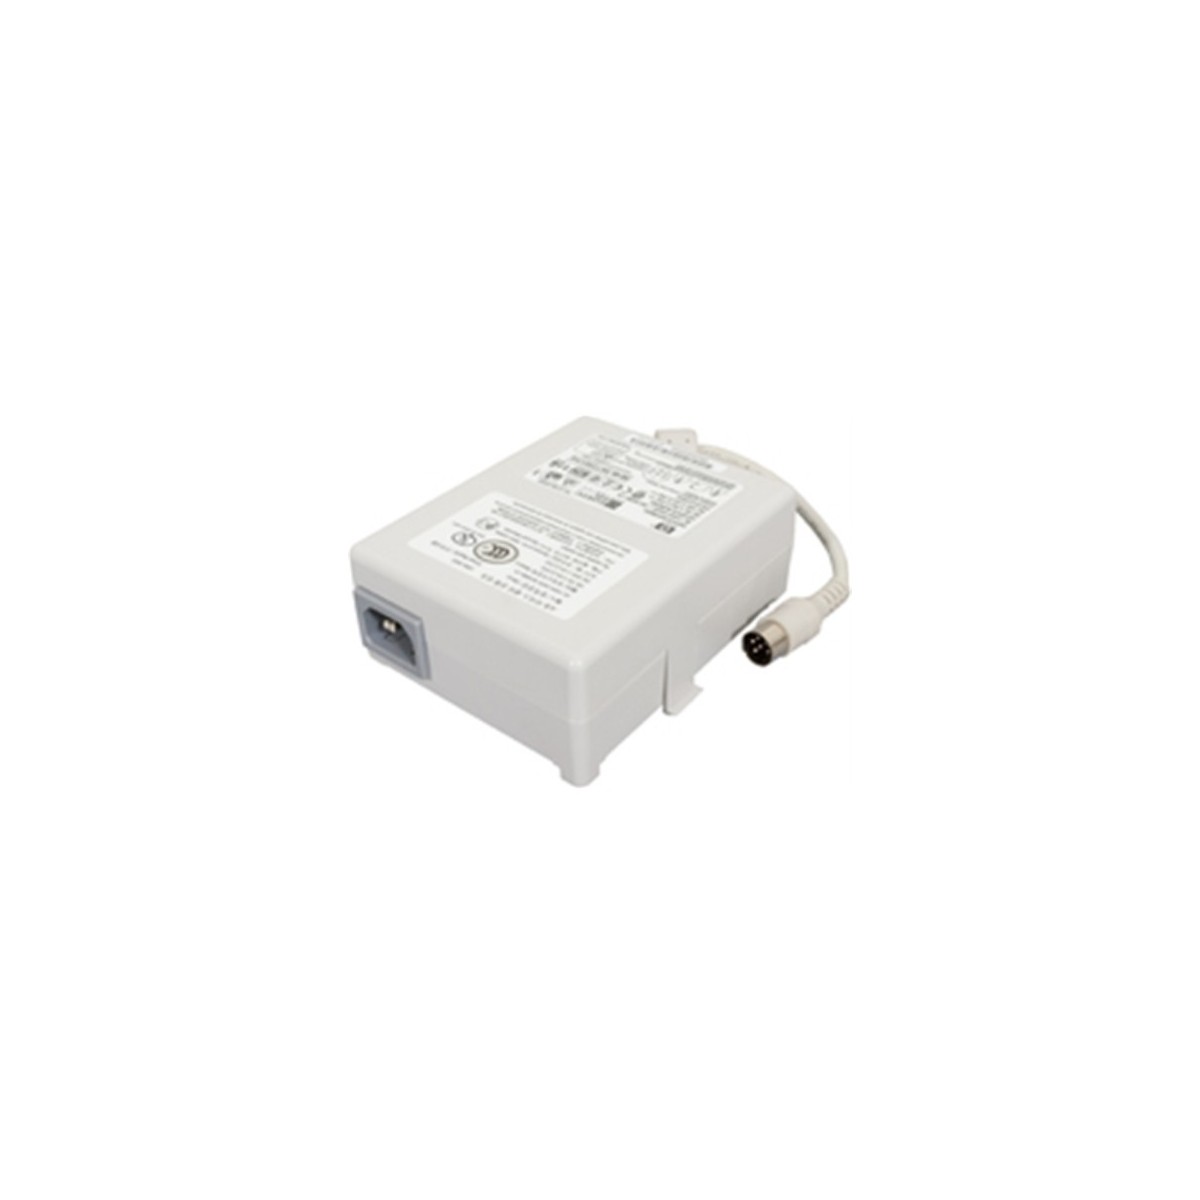 HP C4785-60545 - Power supply - White